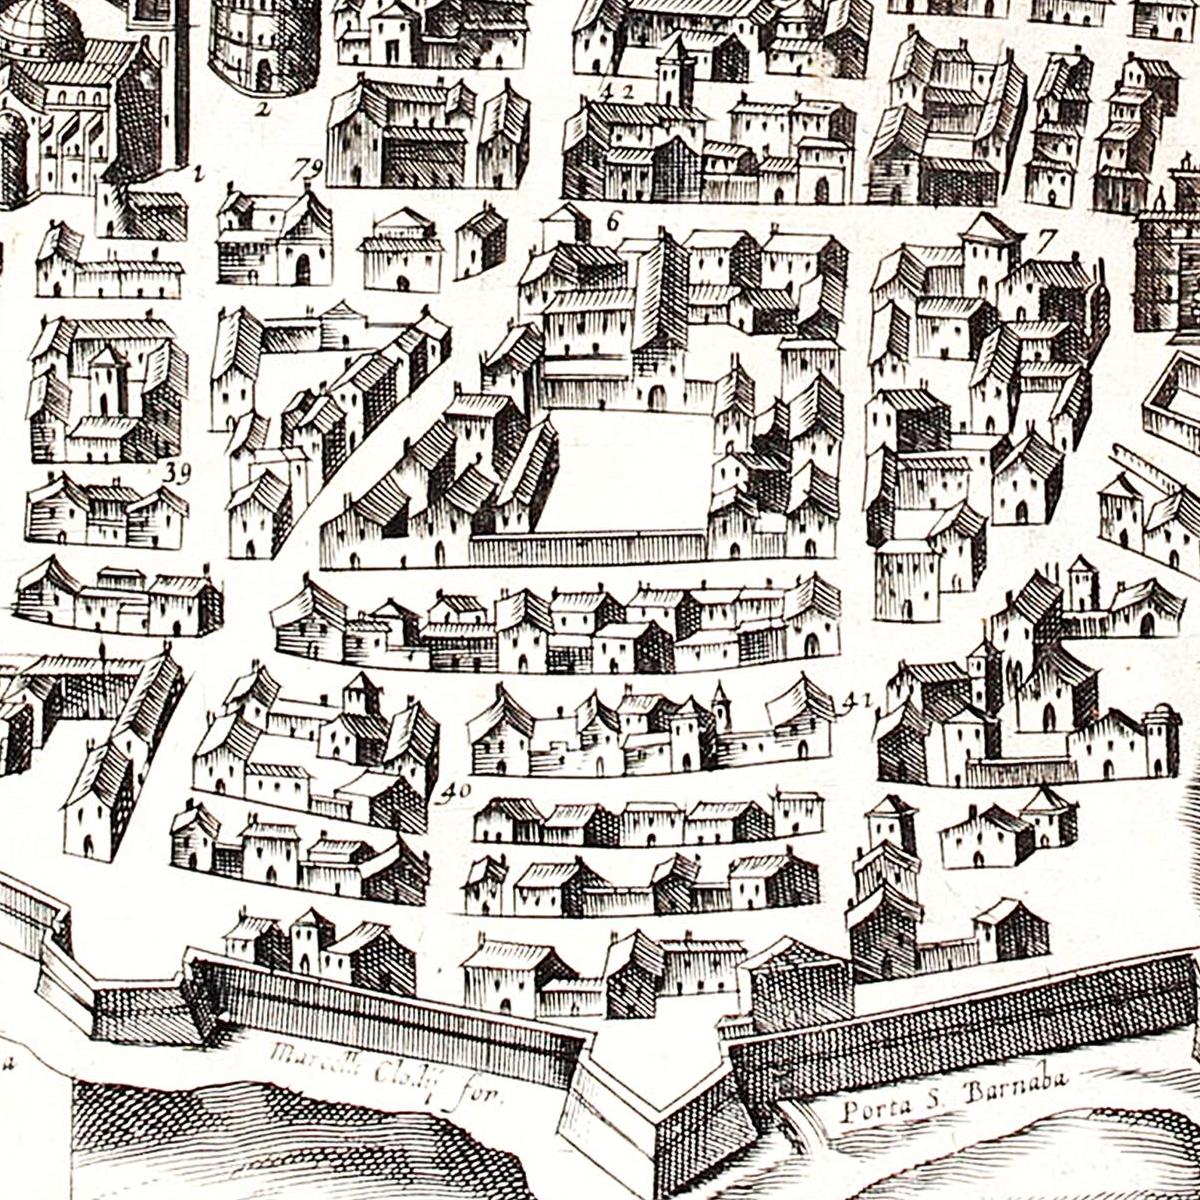 Historischer Stadtplan Parma um 1567